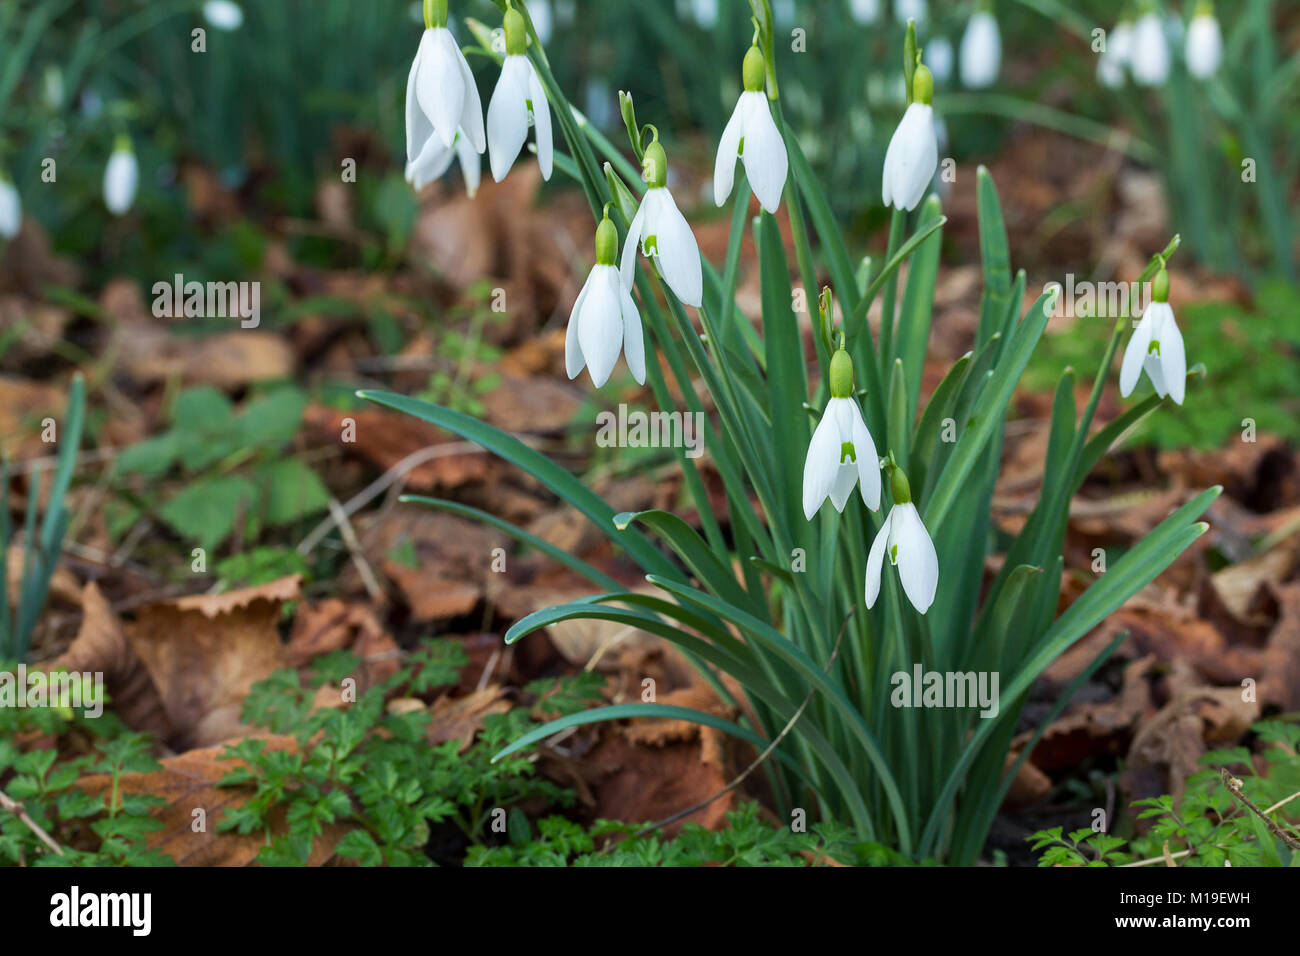 Snow Drop (Galanthus nivalis) Janvier 2018 à la réserve de faune Warnham Horsham Royaume-uni. Fleur de printemps connaissent bien les feuilles étroites basale vert gris pétales blancs Banque D'Images